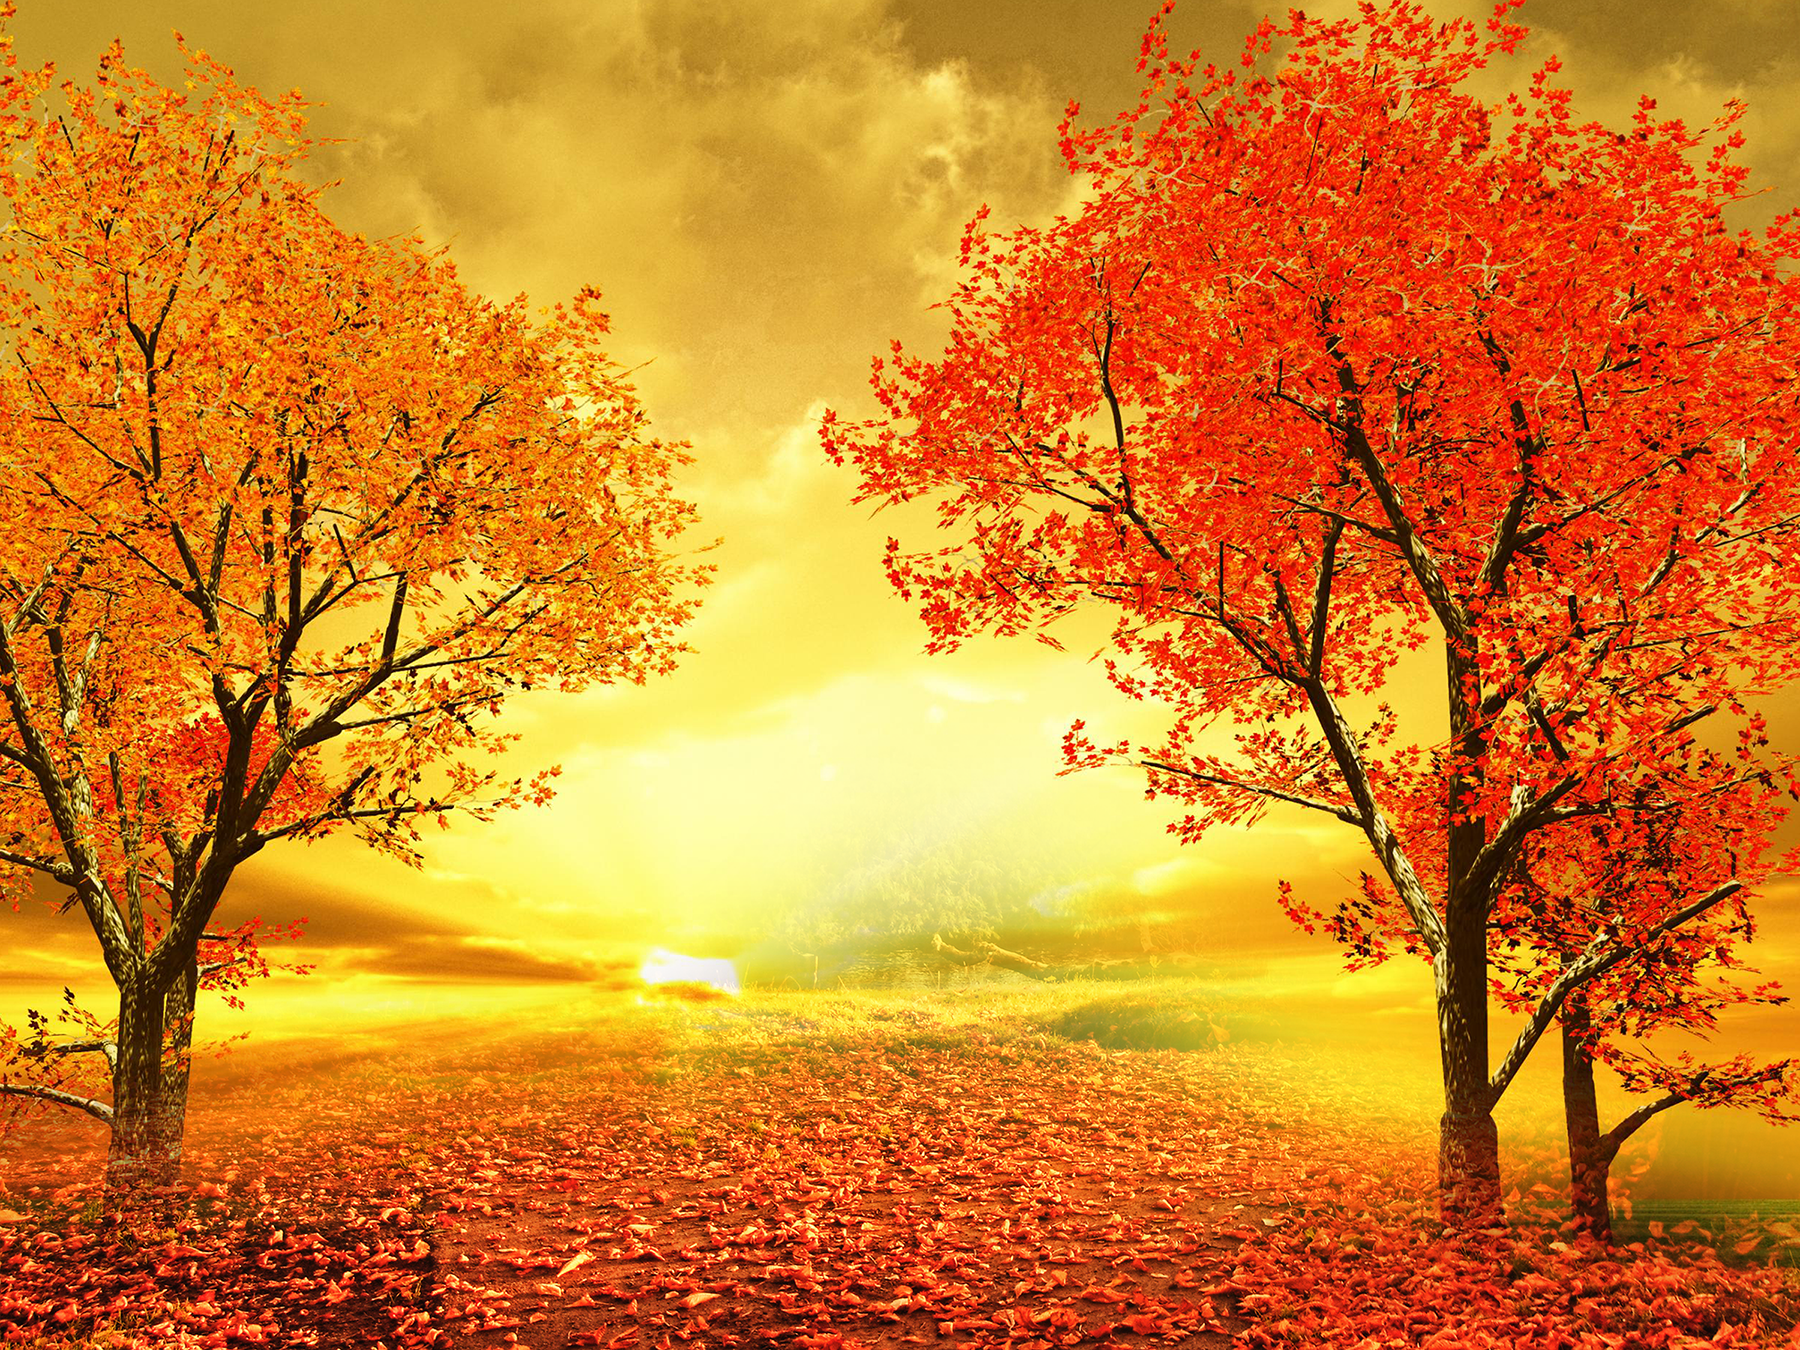 Autumn Sunset Road